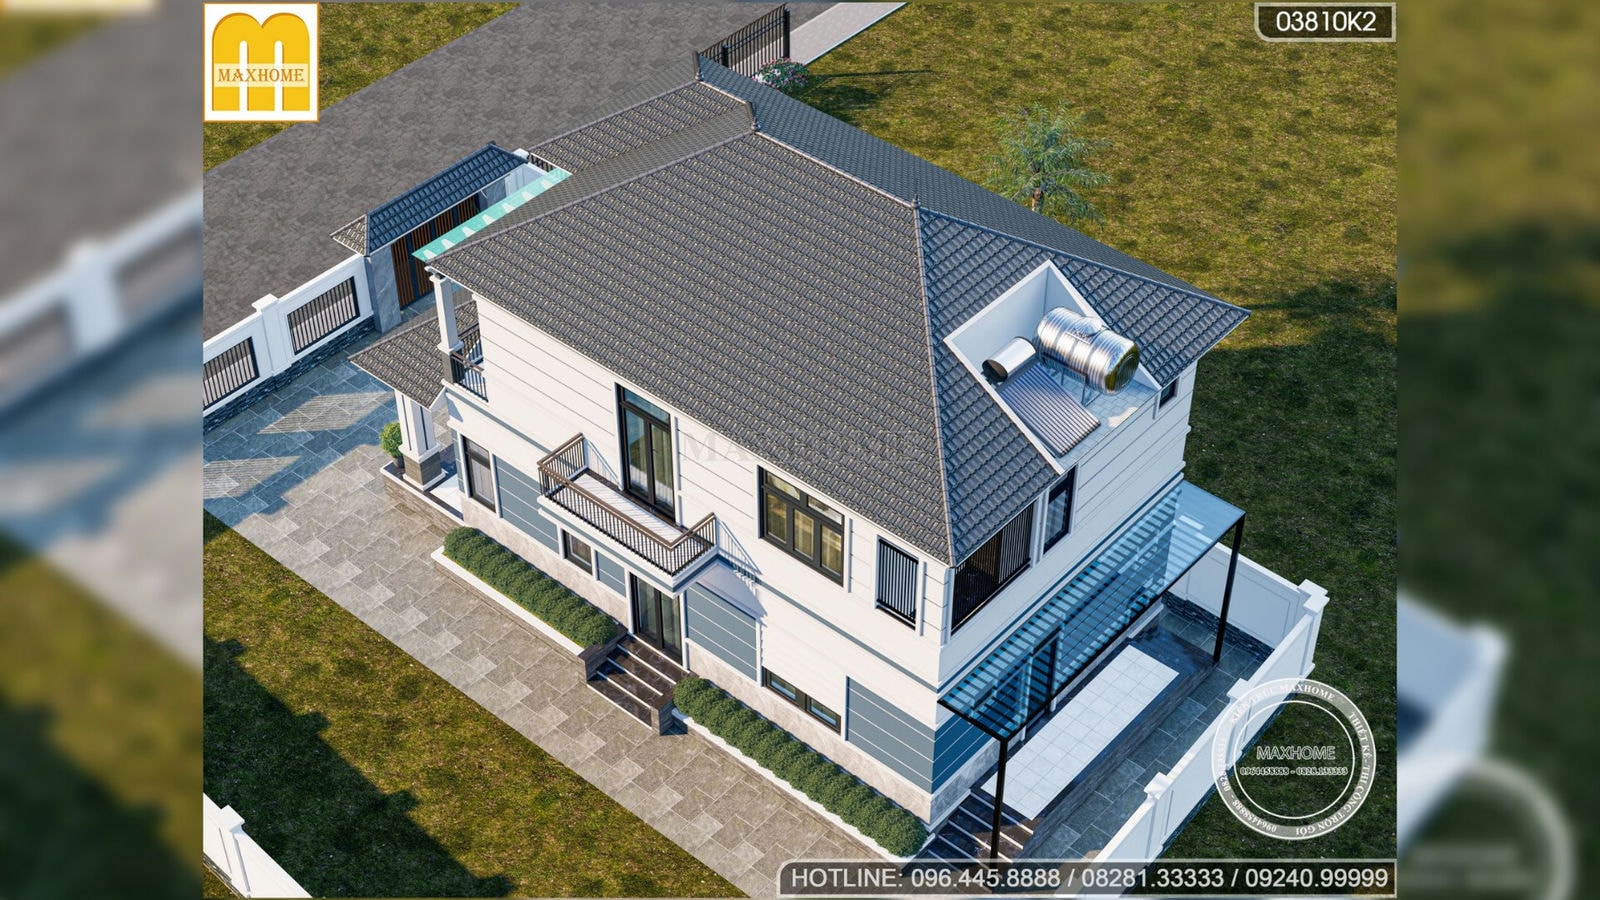 Mẫu nhà mái Nhật 2 tầng đẹp tinh tế với thiết kế hiện đại | MH02527